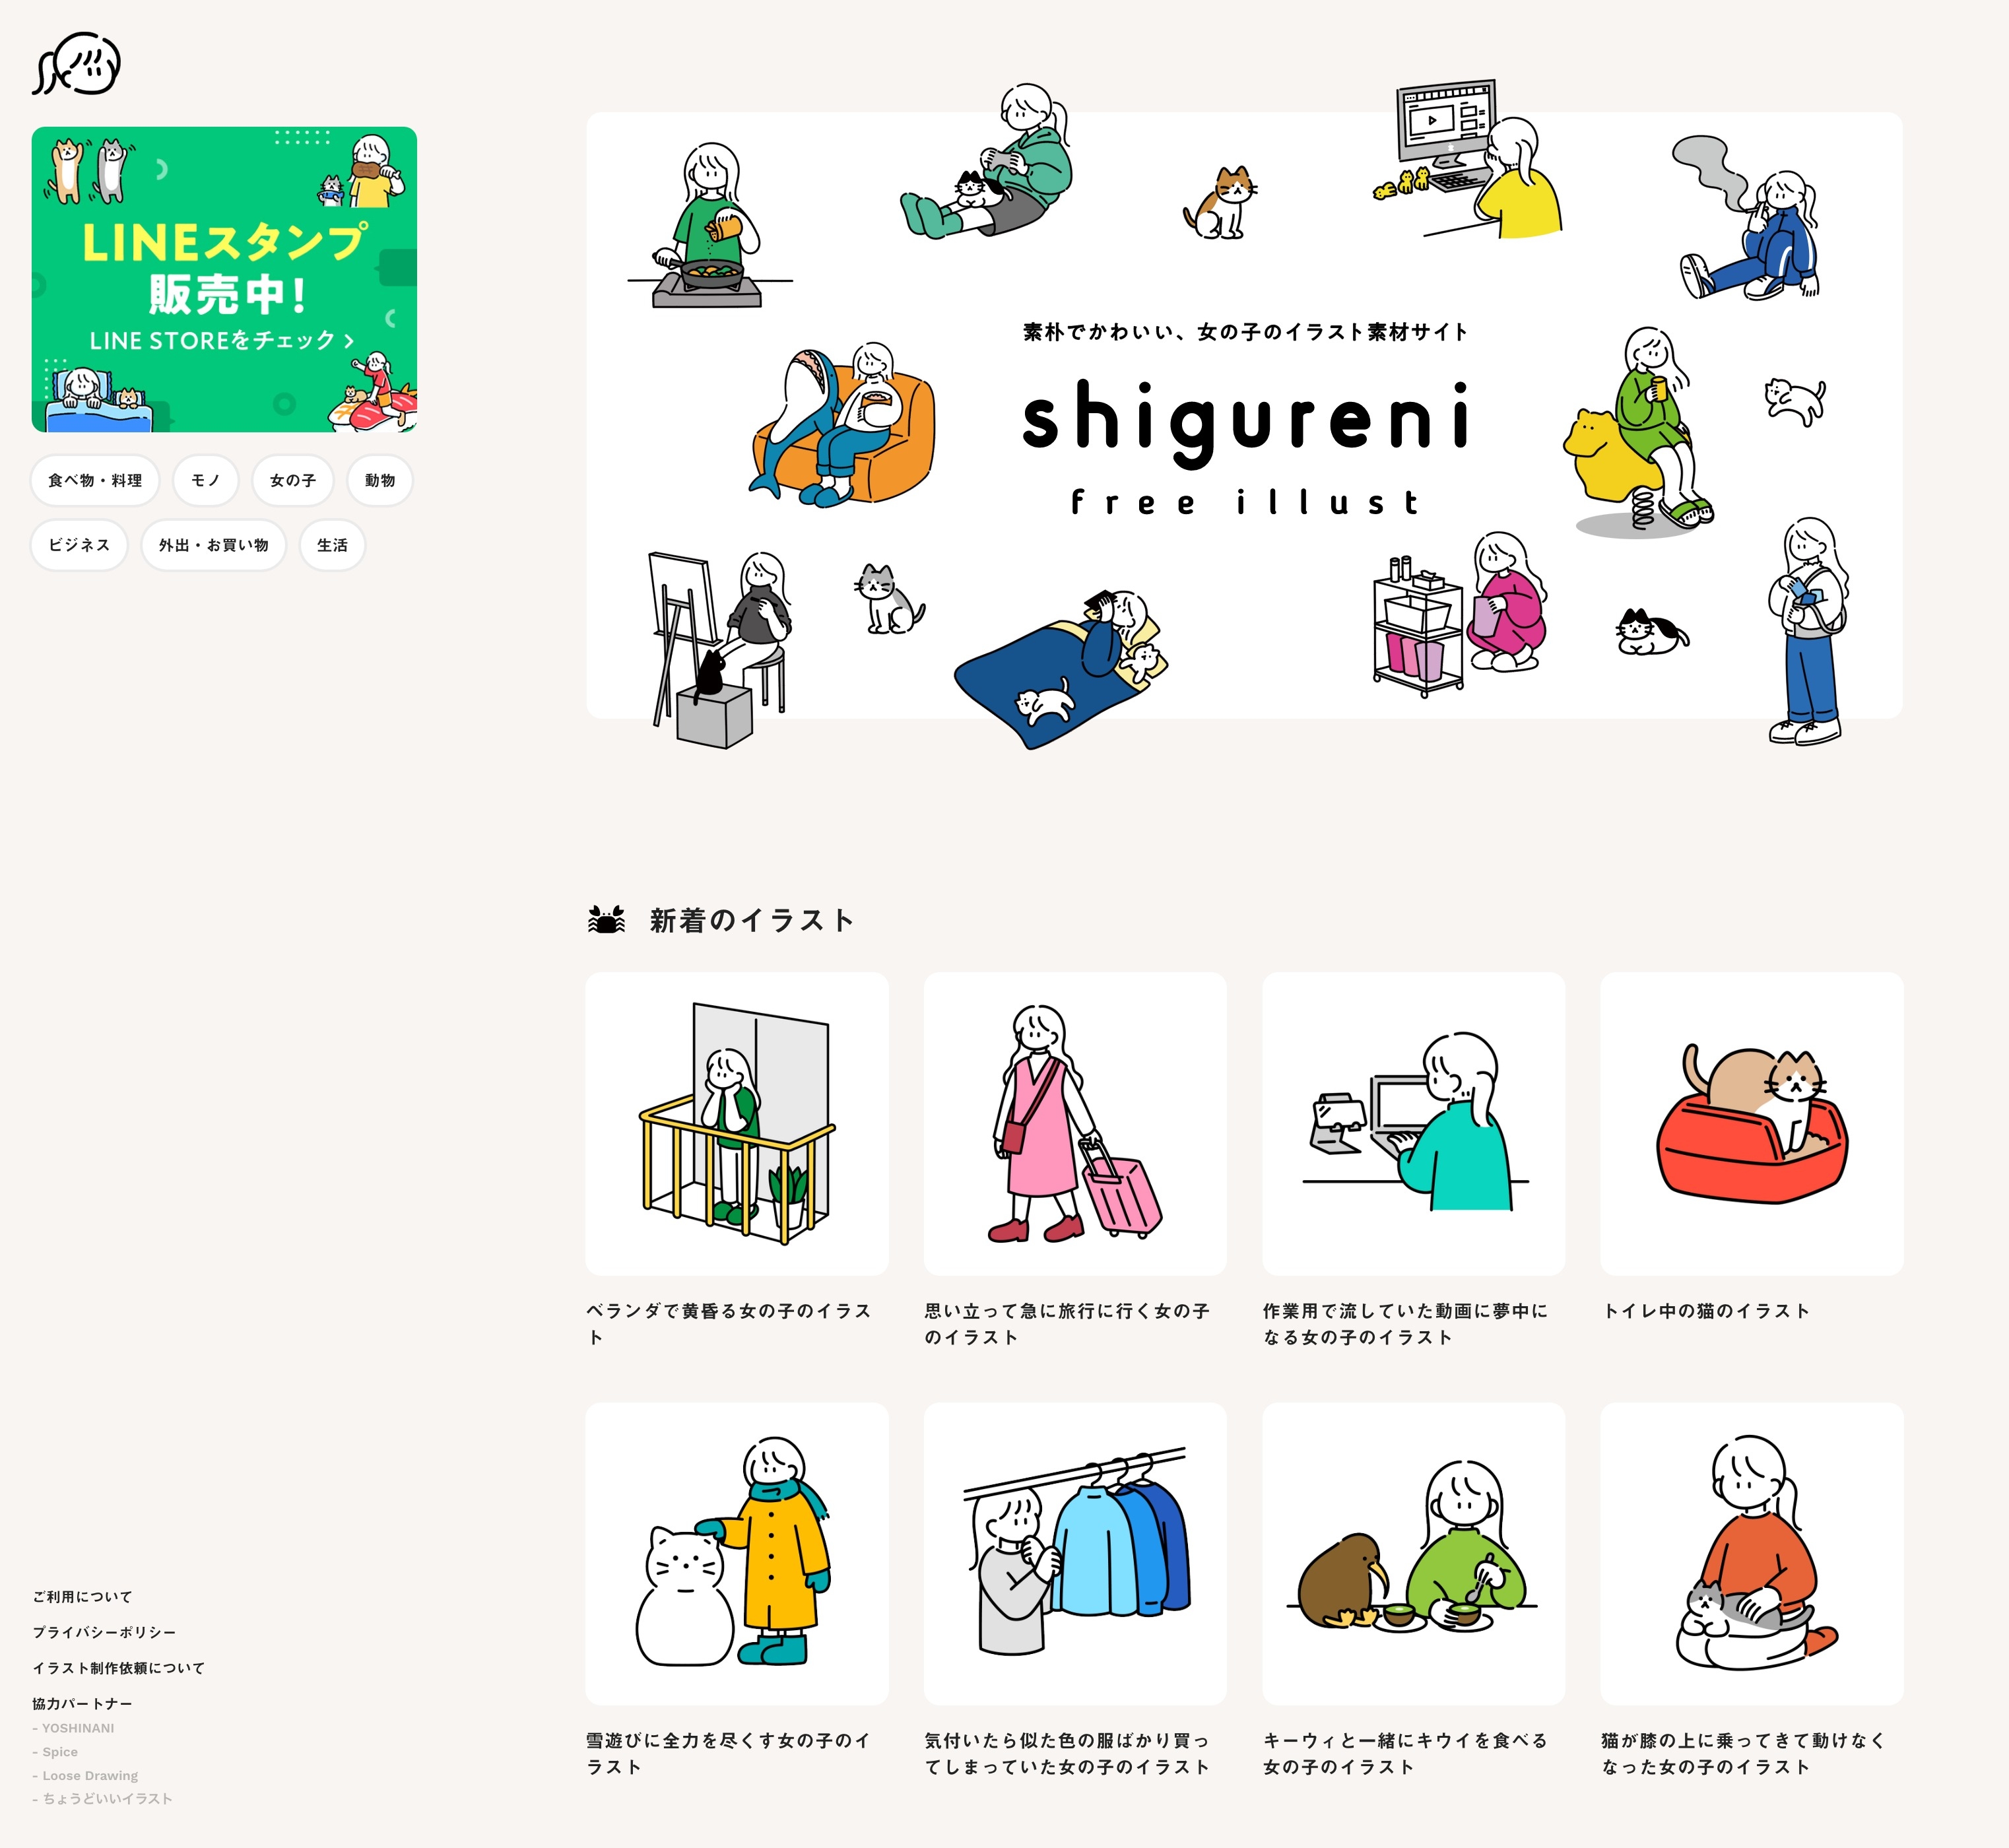 Shigureni Free Illust 素朴で可愛い 女の子のイラスト素材サイト Brik Gallery デザインの参考になるwebサイトリンク集 デザインギャラリー